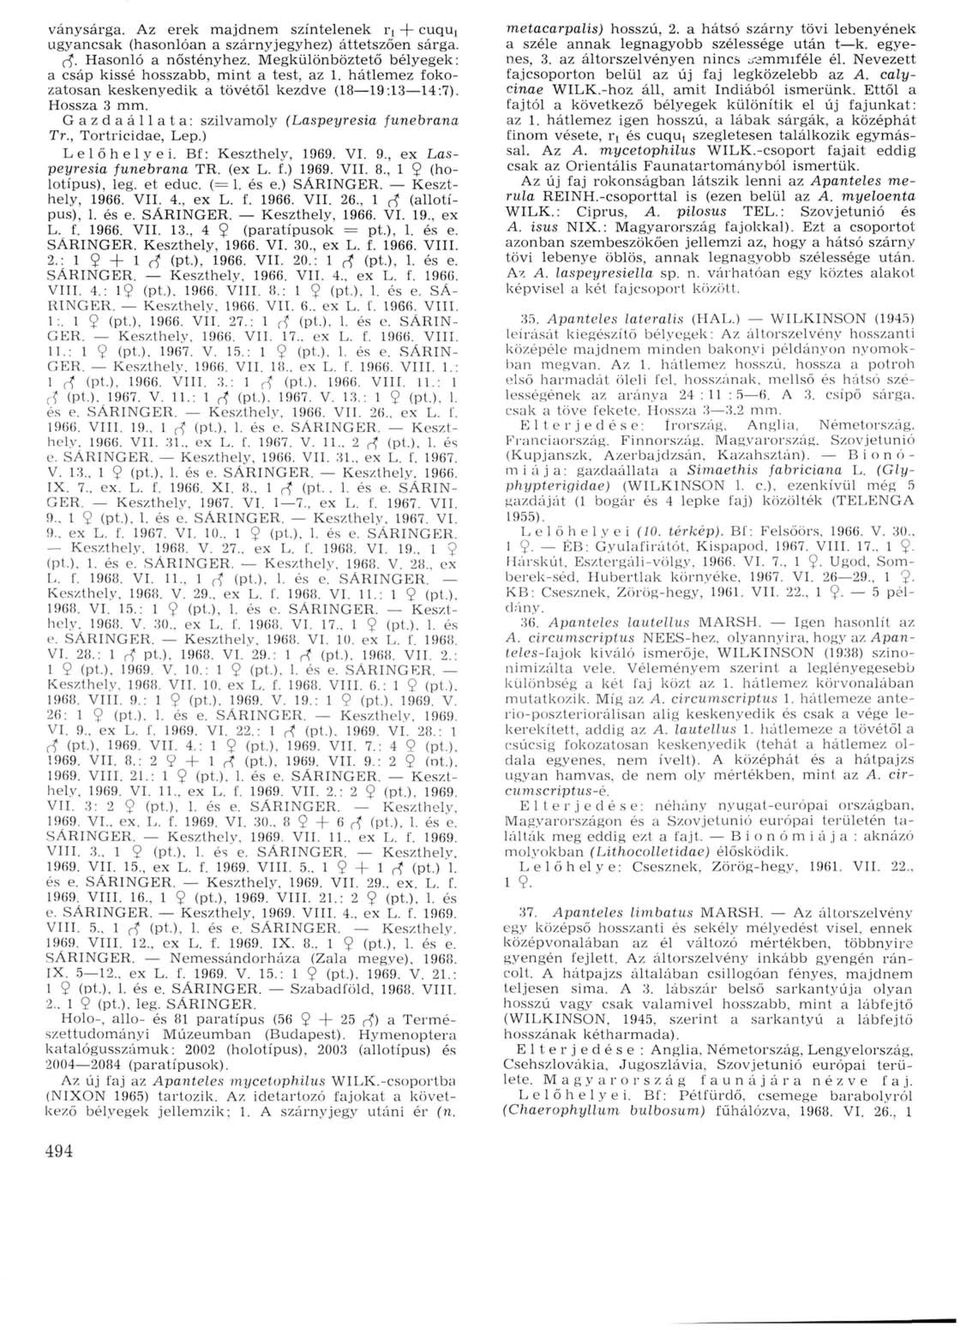 , Tortricidae, Lep.) Lelőhelyei. Bf: Keszthely, 1969. VI. 9., ex Laspeyresia funebrana TR. (ex L. f.) 1969. VII. 8., 1 9 (holotípus), leg. et educ. (= 1. és e.) SÁRINGER. Keszthely, 1966. VII. 4.